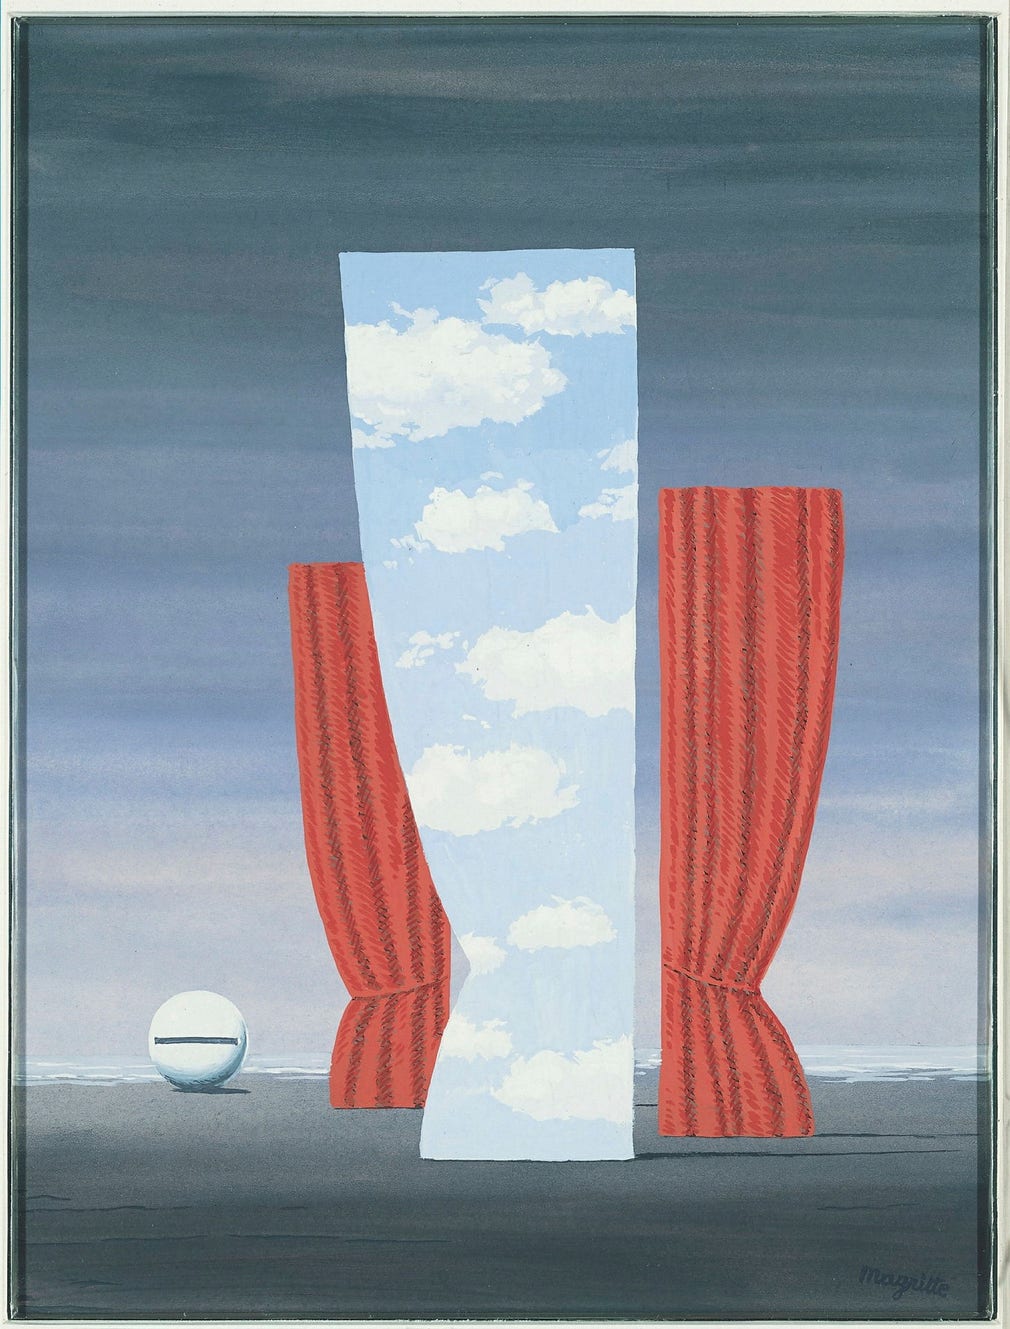 René Magritte, ”La Joconde”, 1964